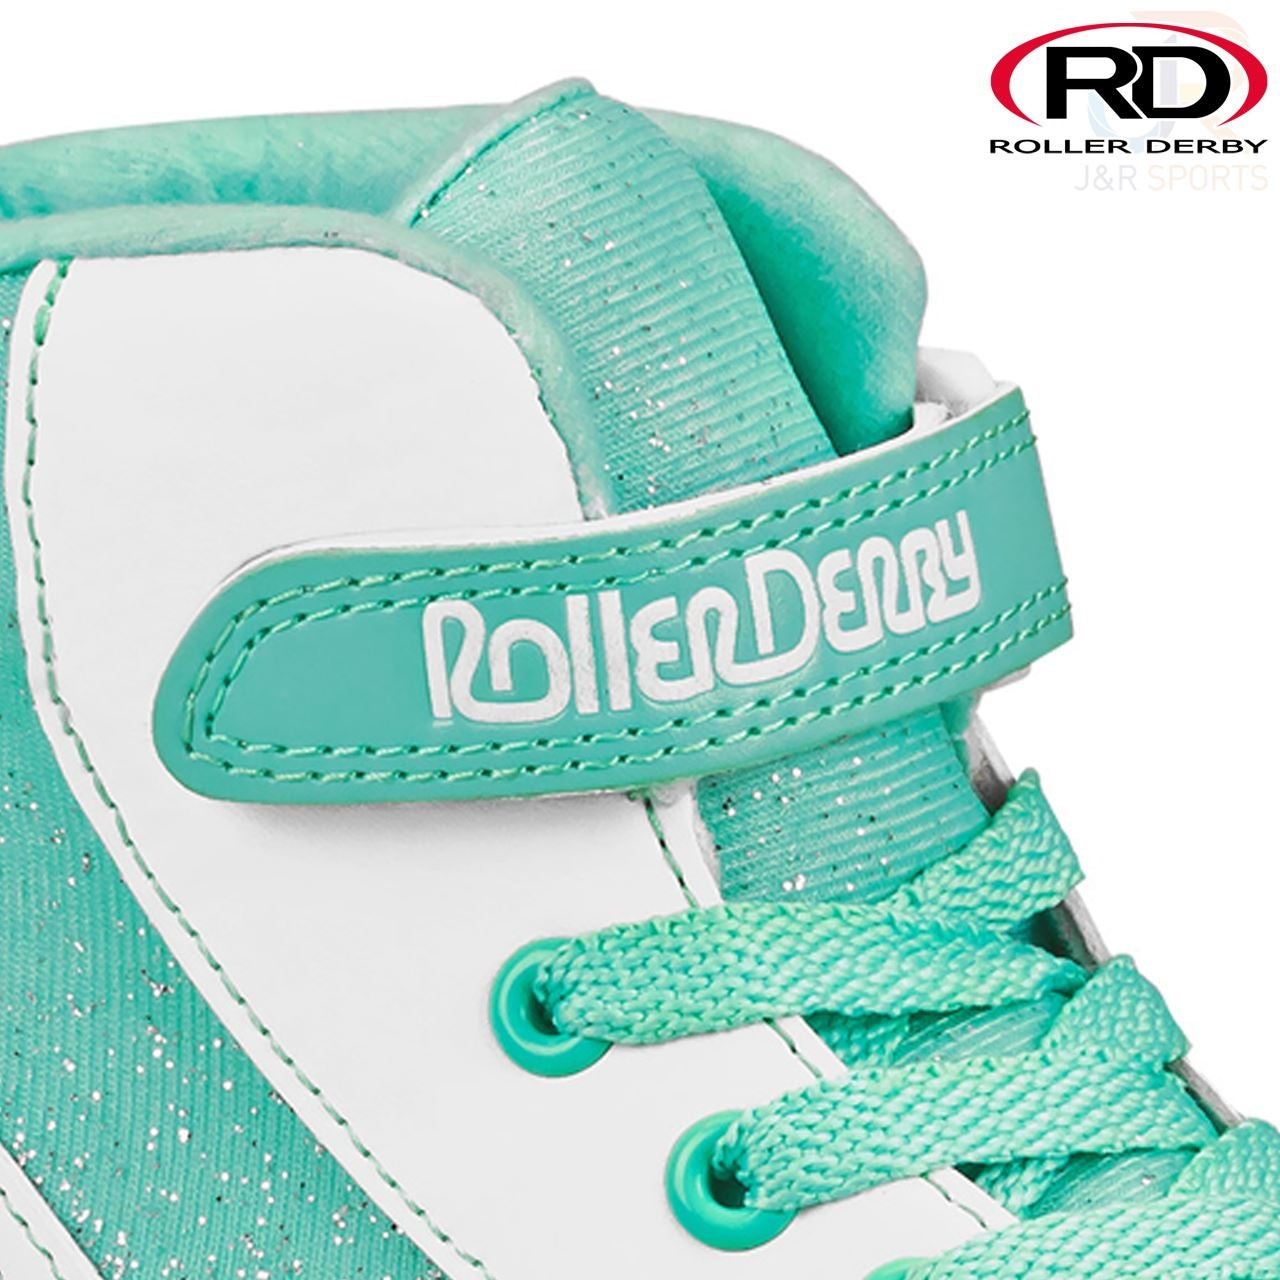 Roller Derby Firestar V2 Quad Roller Skates - White / Teal - Strap